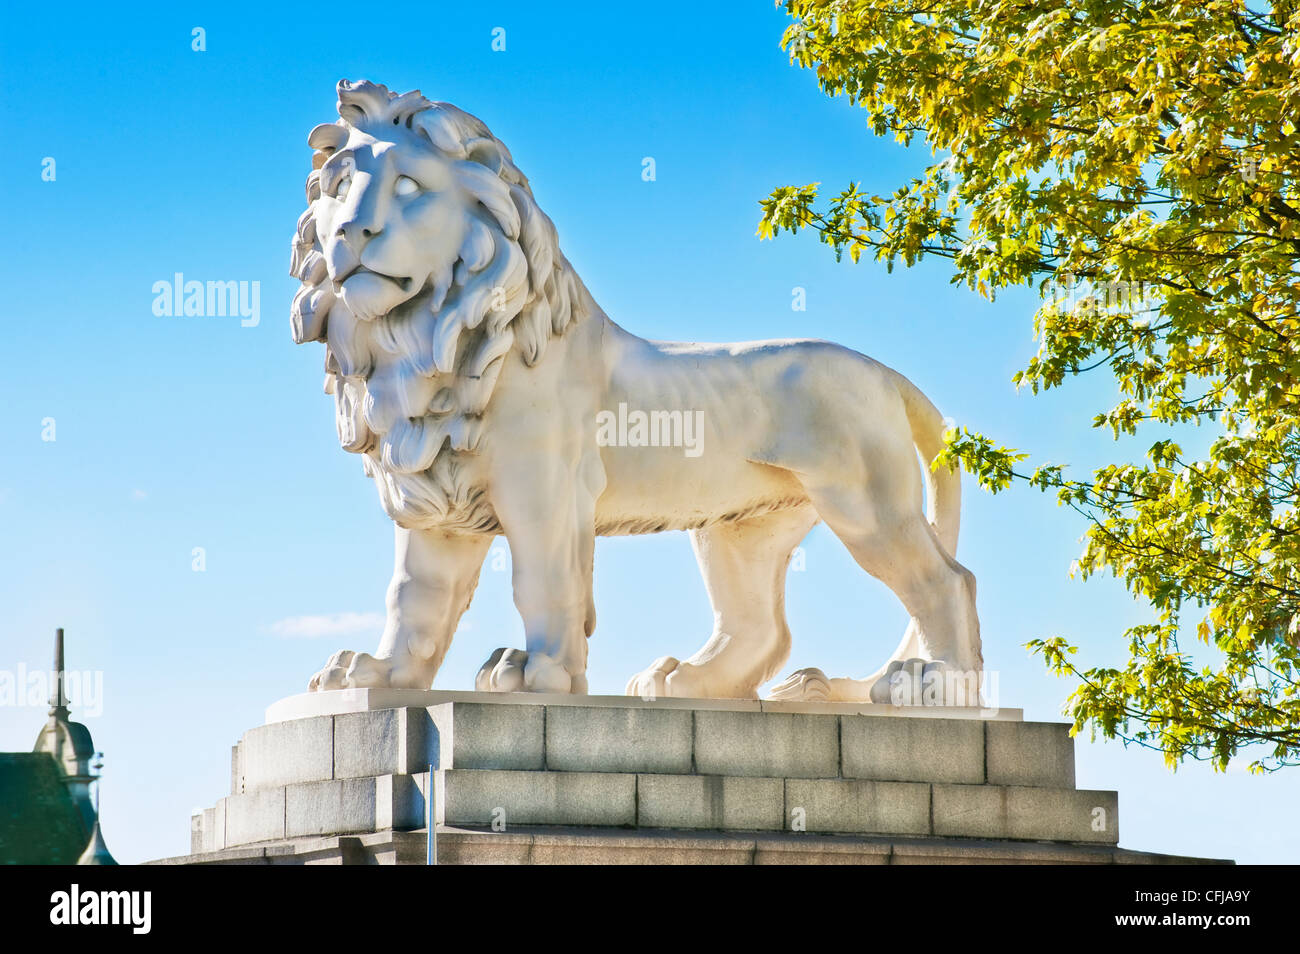 Majestueux massif 13 tonne white lion sculpture se dresse fièrement sur un socle élevé en plein soleil sur le pont de Westminster, Londres Banque D'Images